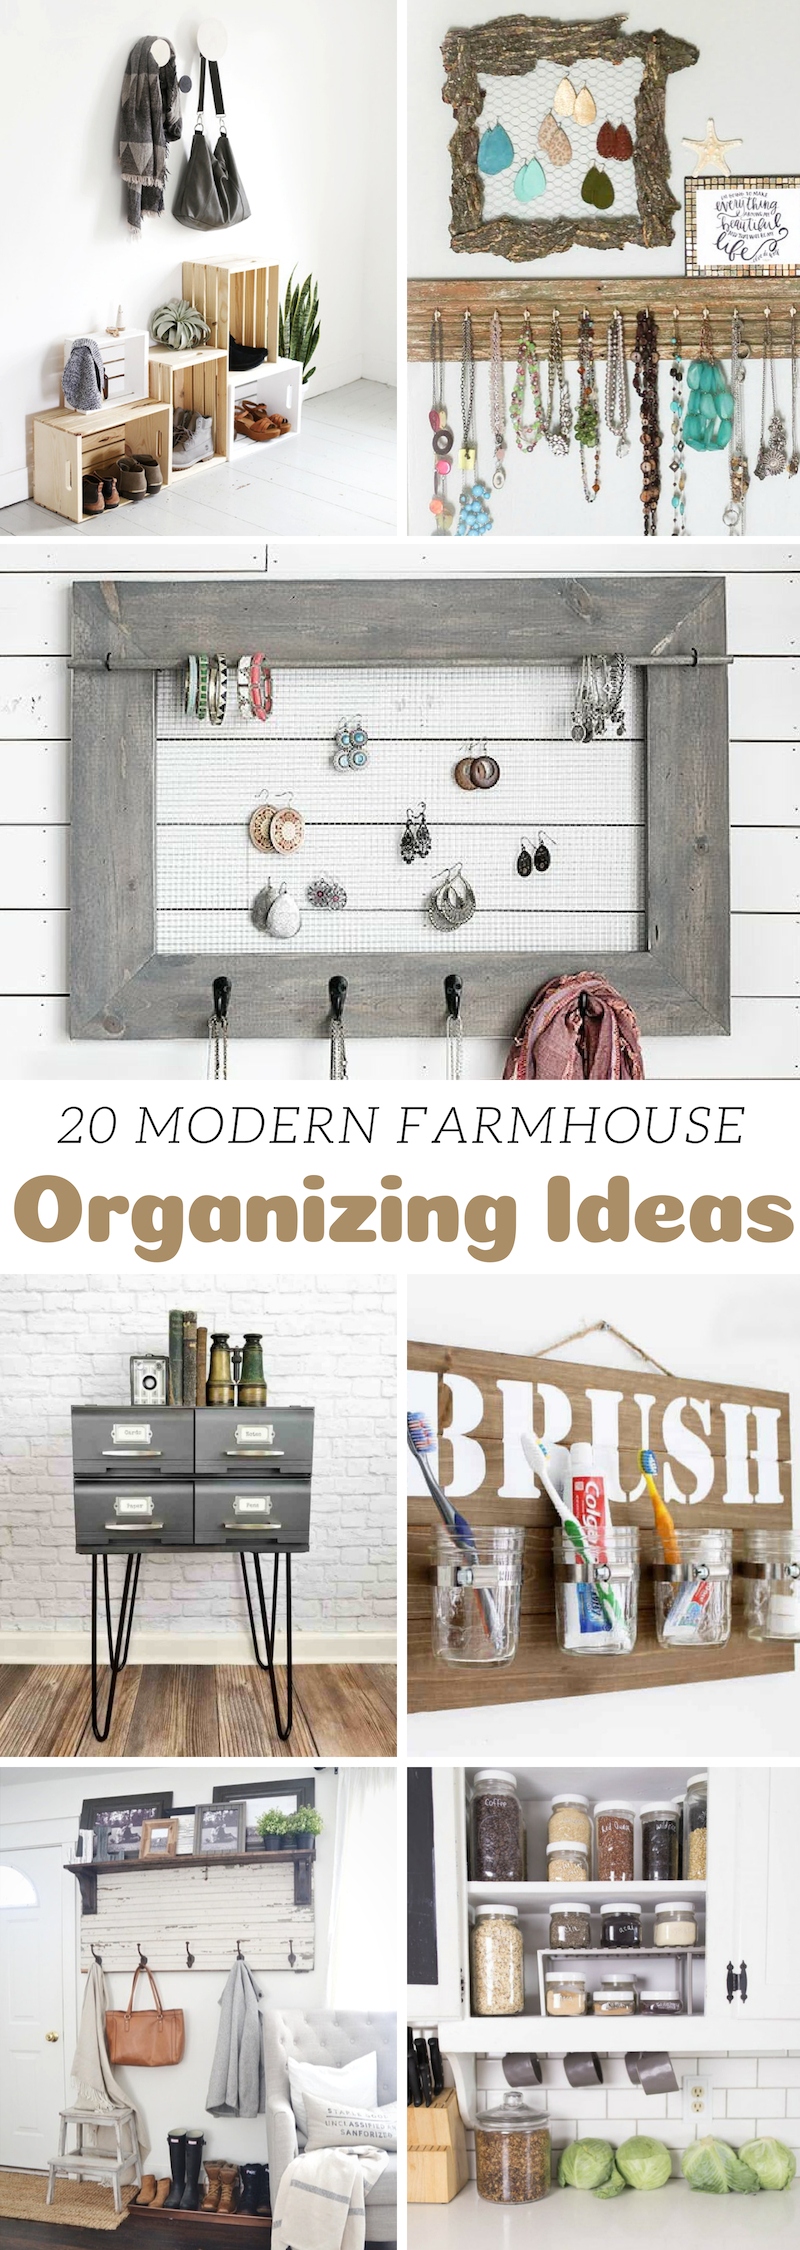 Modern Farmhouse Organizing Ideas 